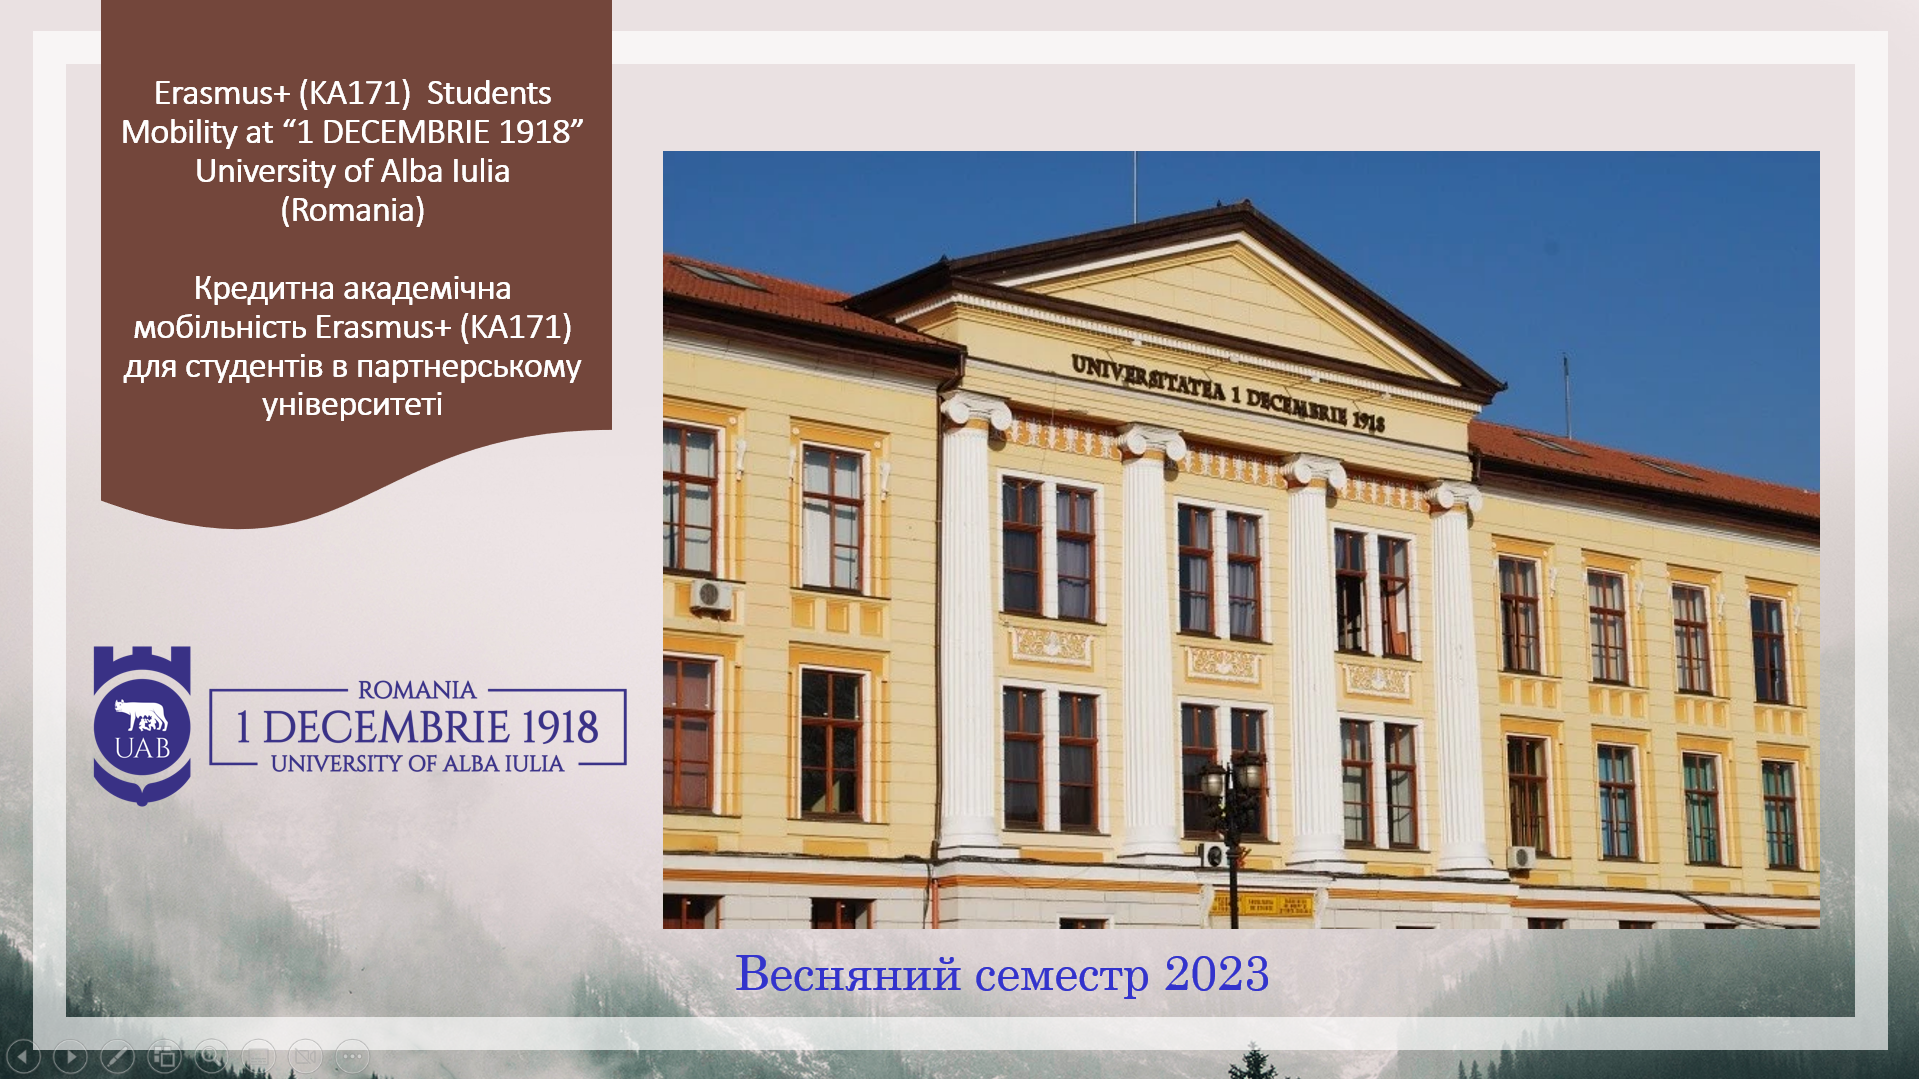 Румунський університет «1 DECEMBRIE 1918»  University of Alba Iulia  запрошує 15 студентів взяти участь у програмі кредитної академічної мобільності Erasmus+ у весняному семестрі 2023 року